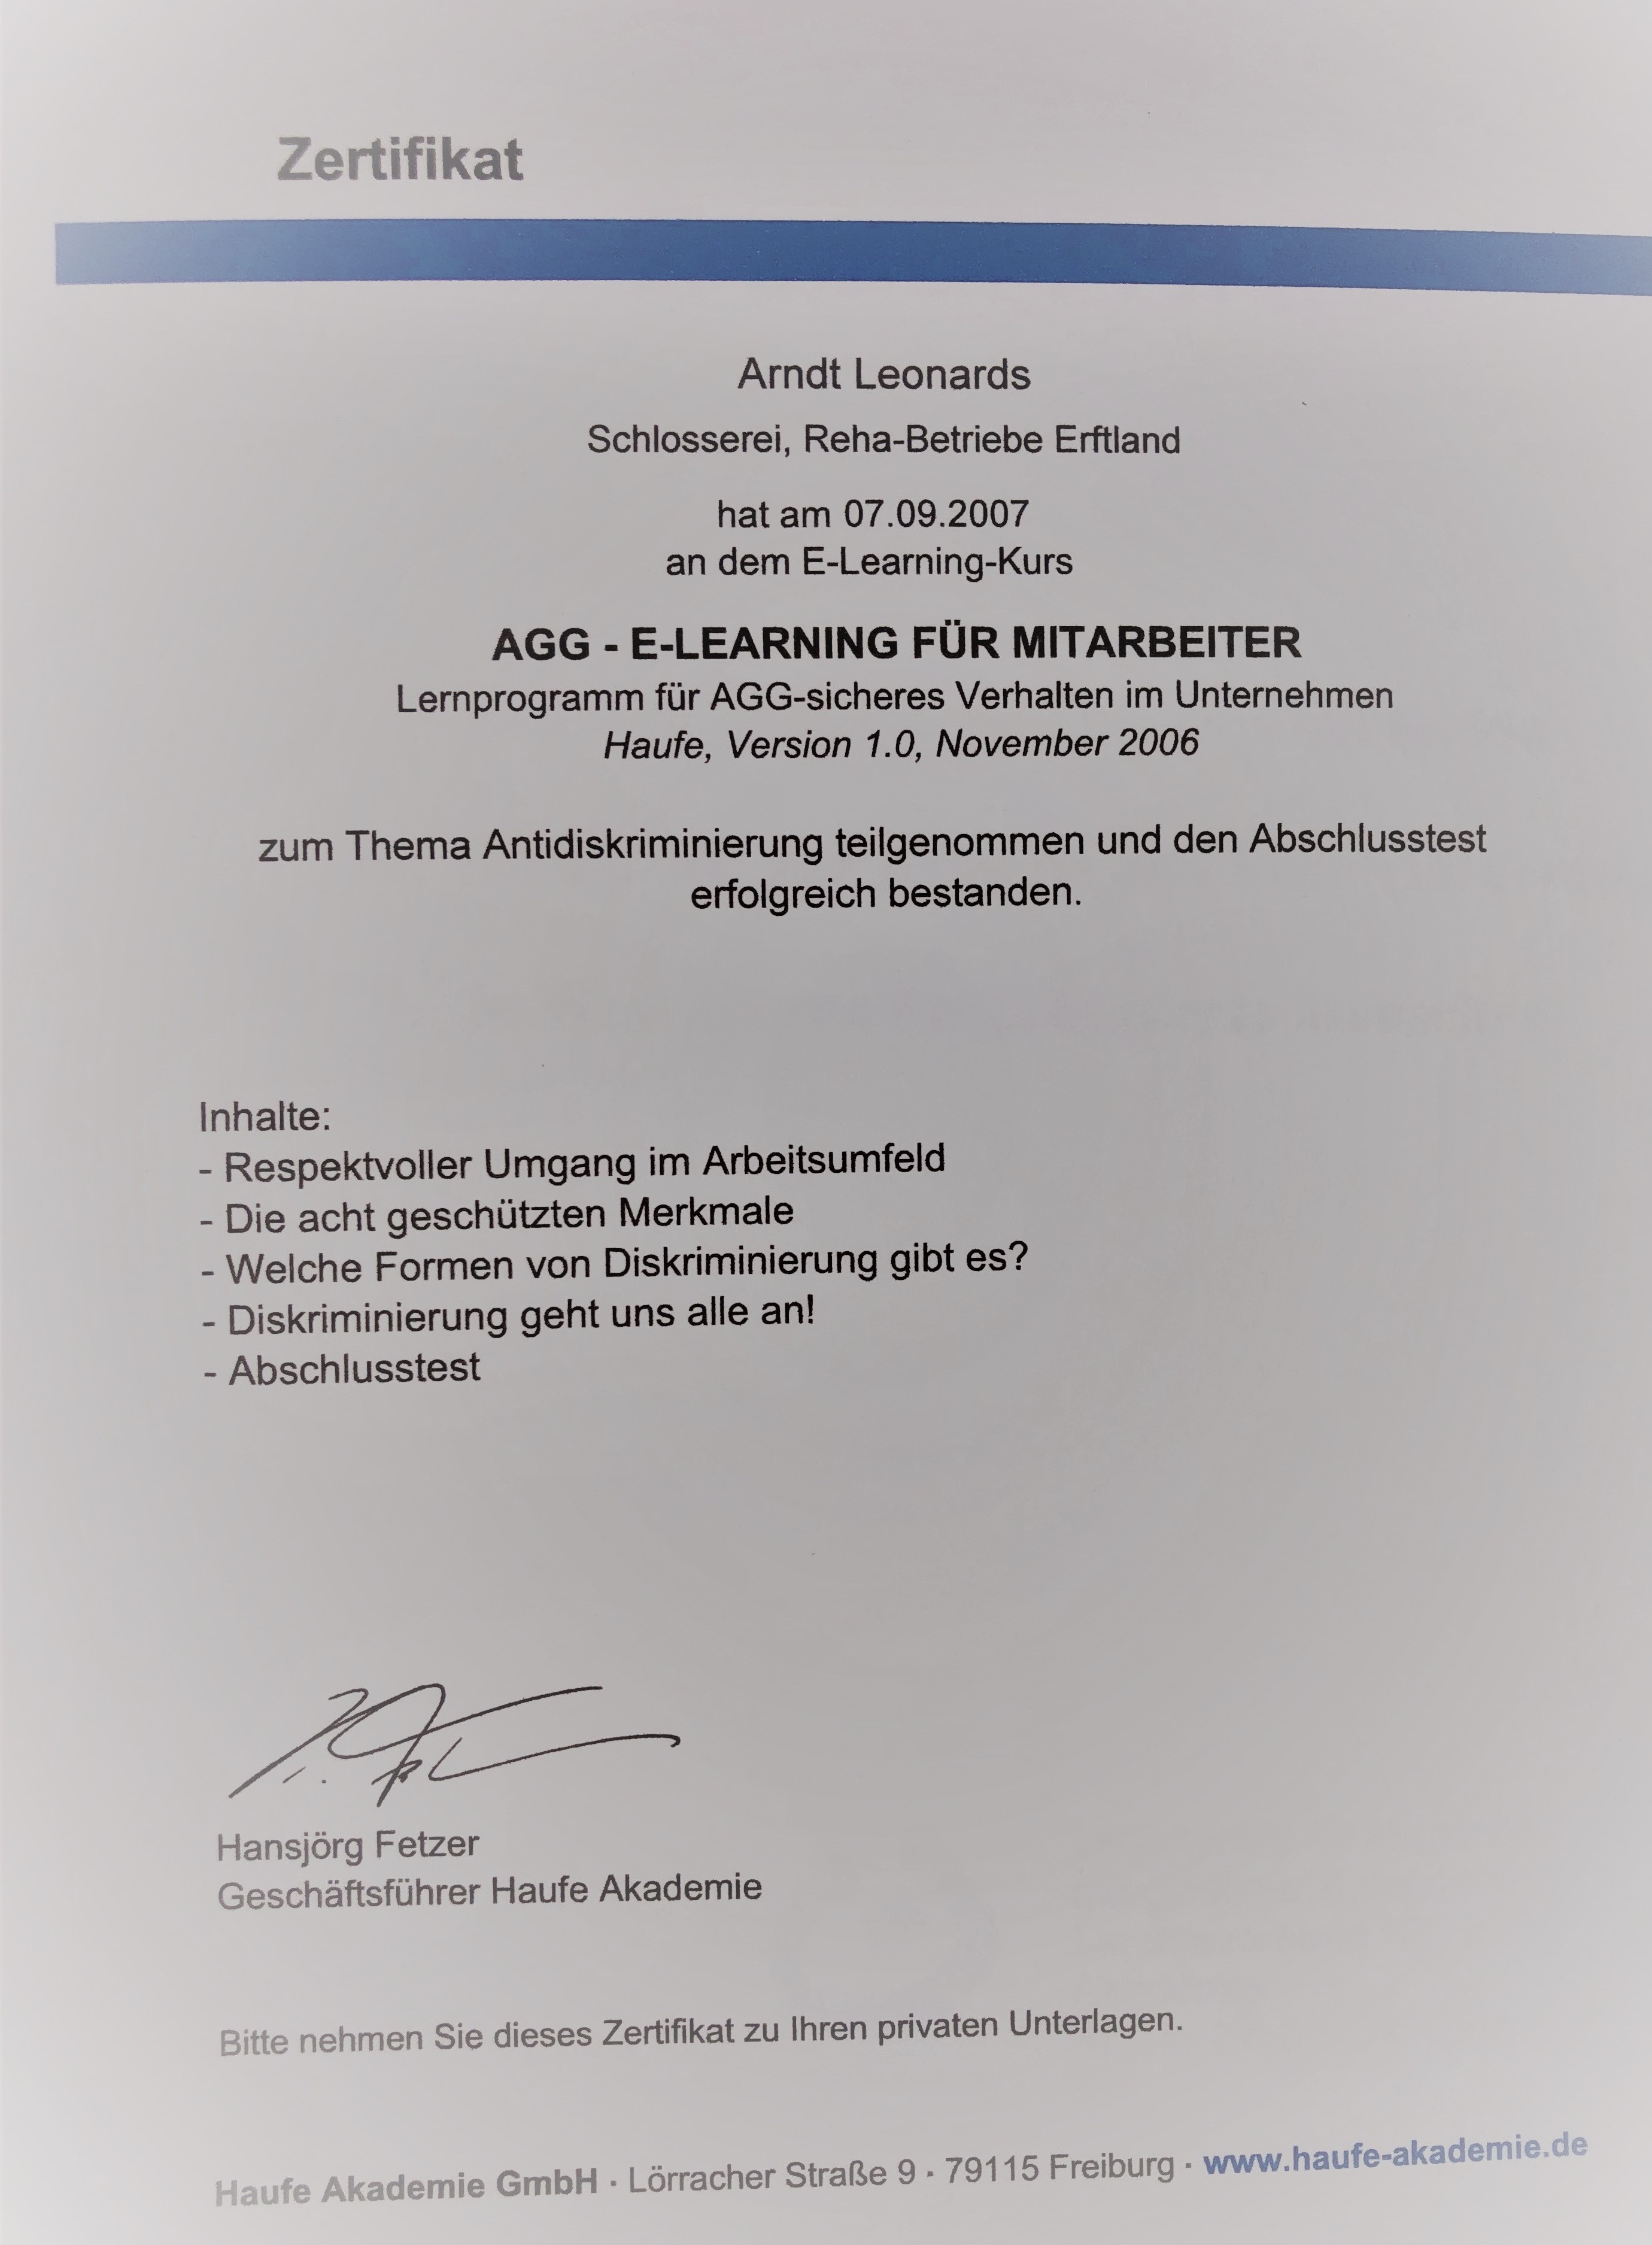 AGG-Schulung Zertifikat Arndt Leonards Düren eLearning-System Mitarbeiterinnen Führungskräfte